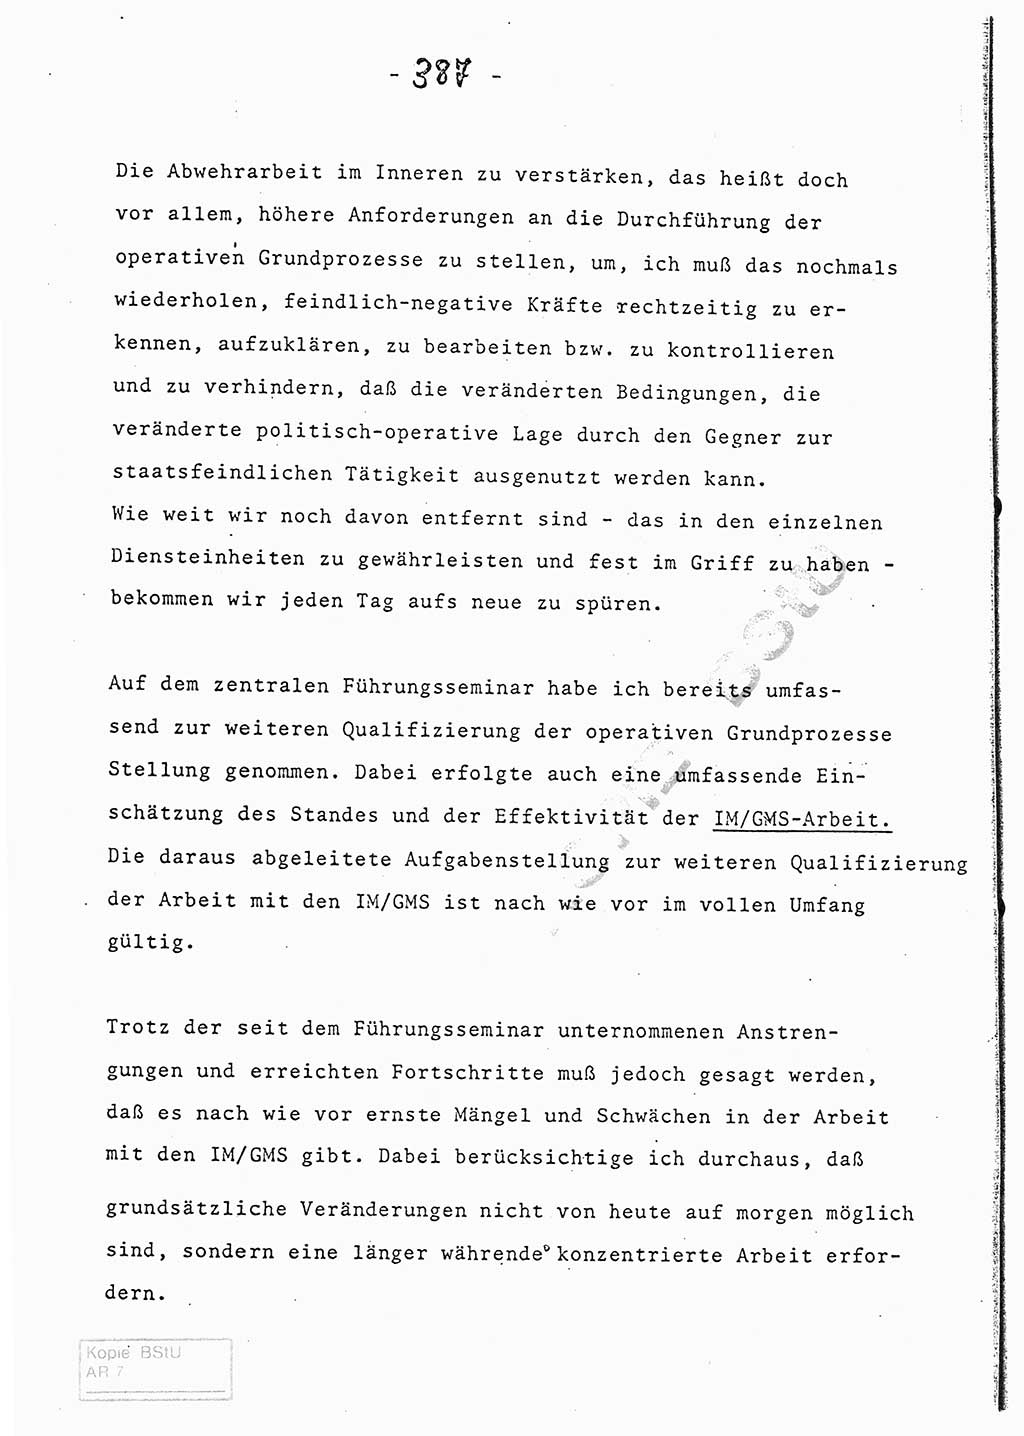 Referat (Entwurf) des Genossen Minister (Generaloberst Erich Mielke) auf der Dienstkonferenz 1972, Ministerium für Staatssicherheit (MfS) [Deutsche Demokratische Republik (DDR)], Der Minister, Geheime Verschlußsache (GVS) 008-150/72, Berlin 25.2.1972, Seite 387 (Ref. Entw. DK MfS DDR Min. GVS 008-150/72 1972, S. 387)